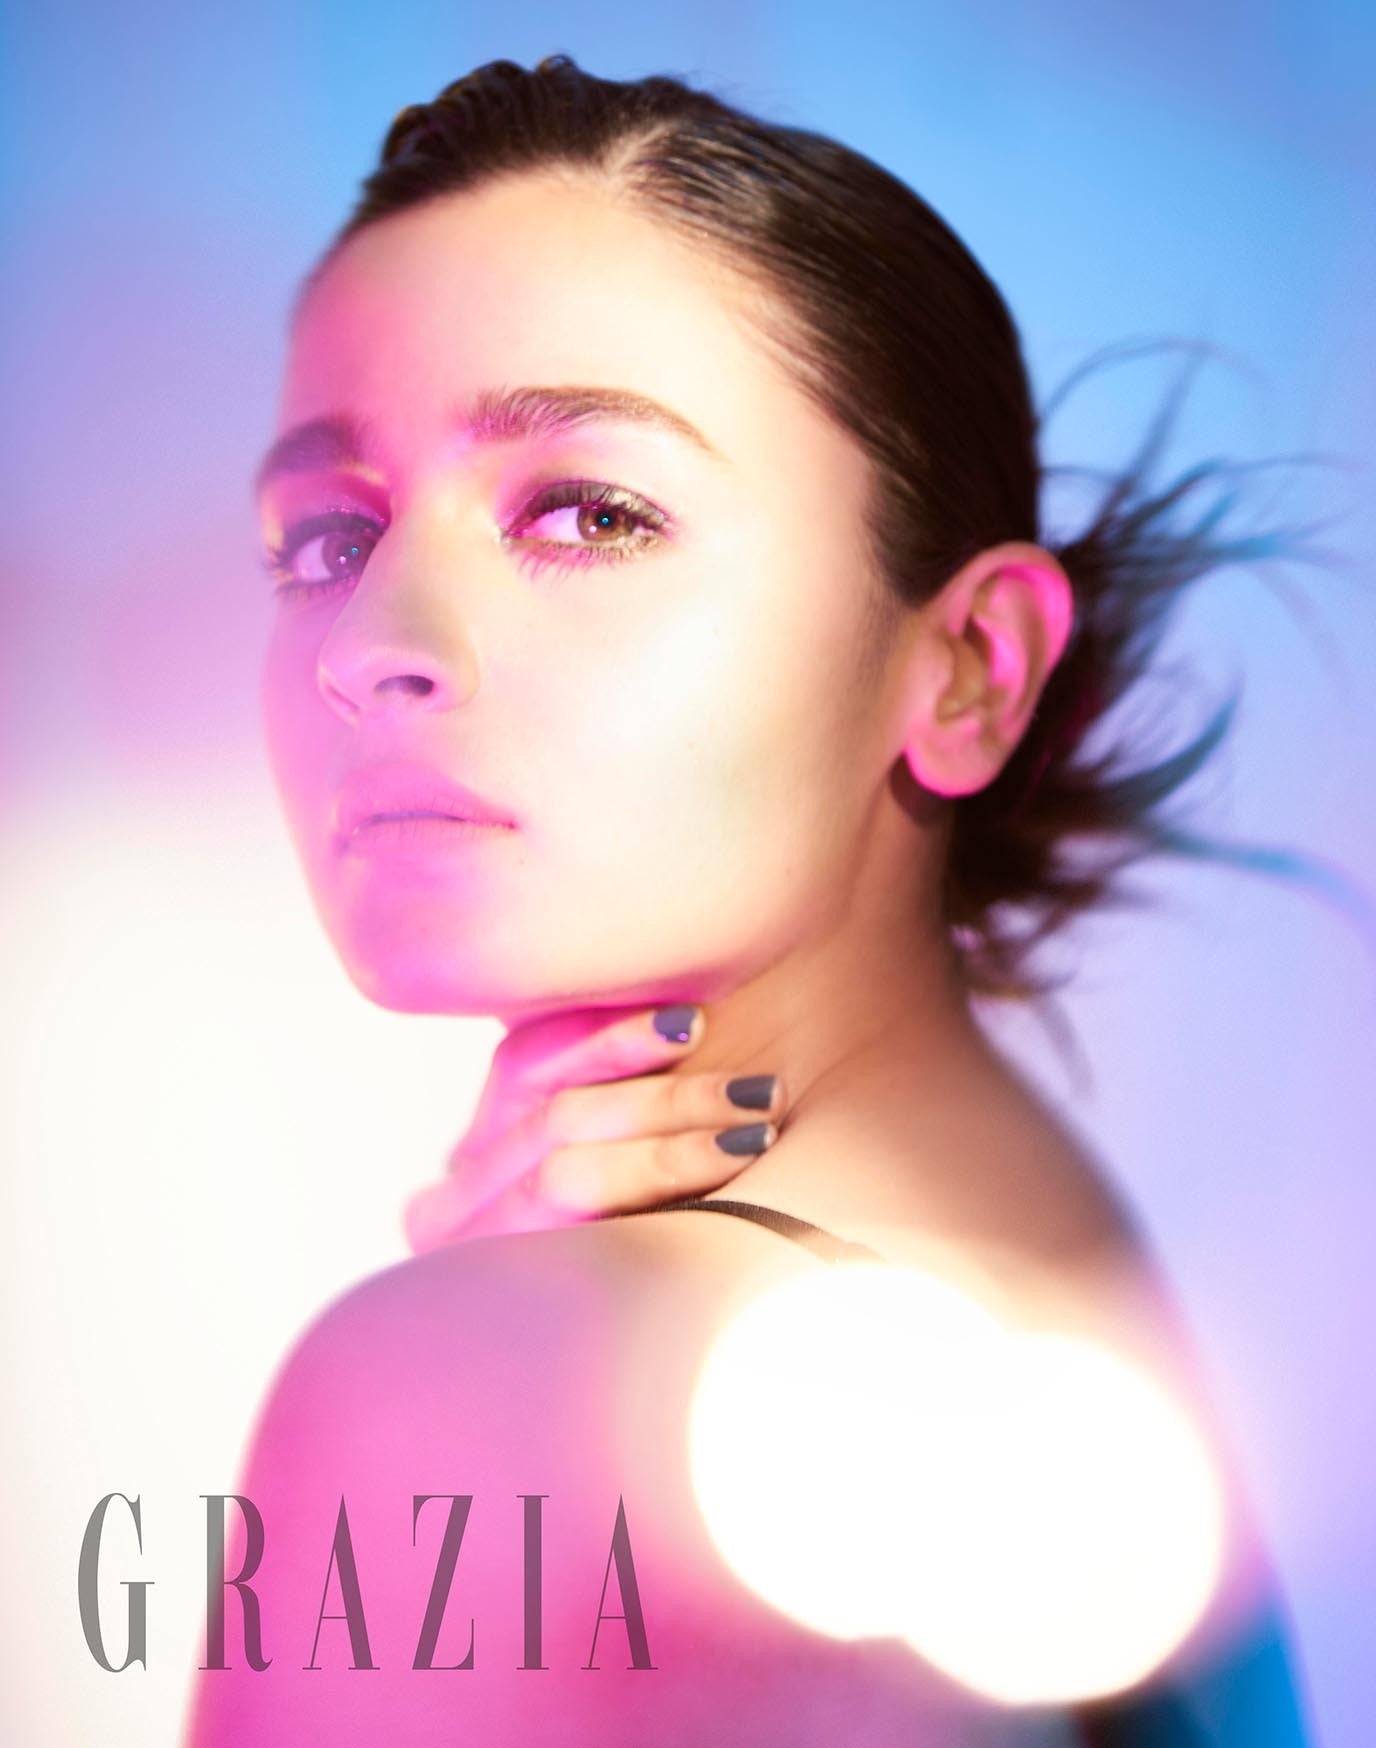 Alia Bhatt Graced the Cover of Fashion Magazine Grazia 